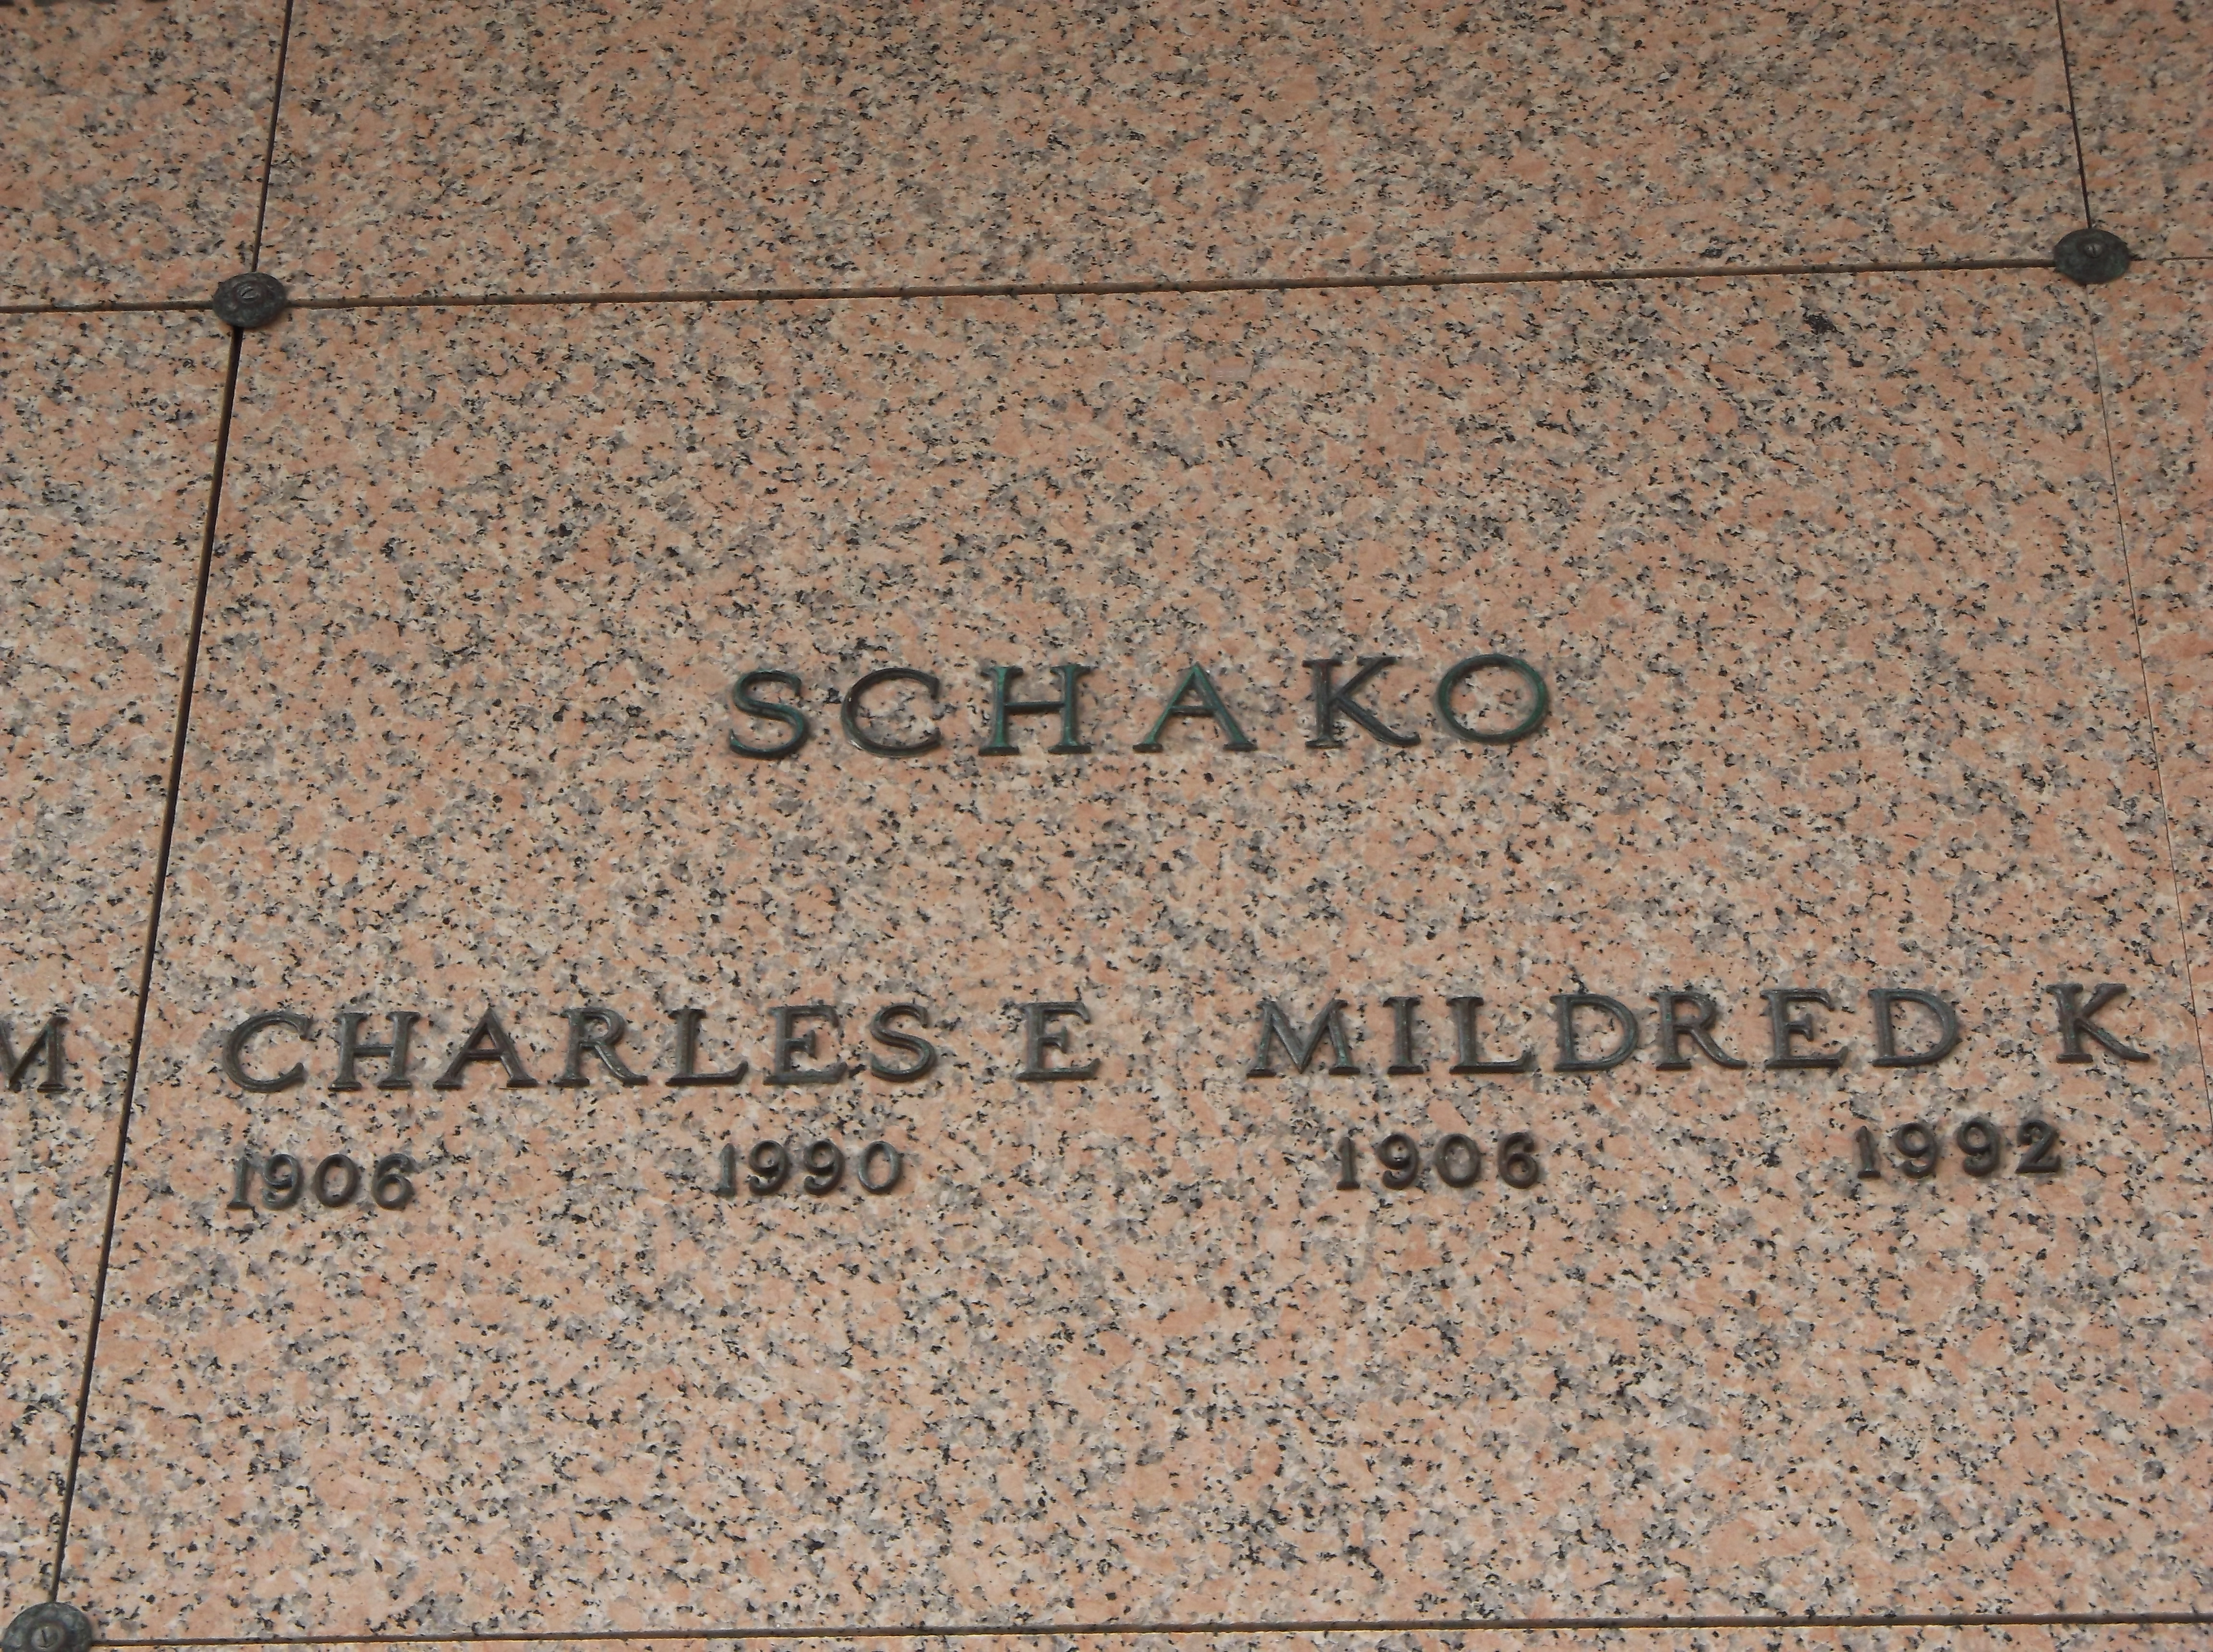 Mildred K Schako